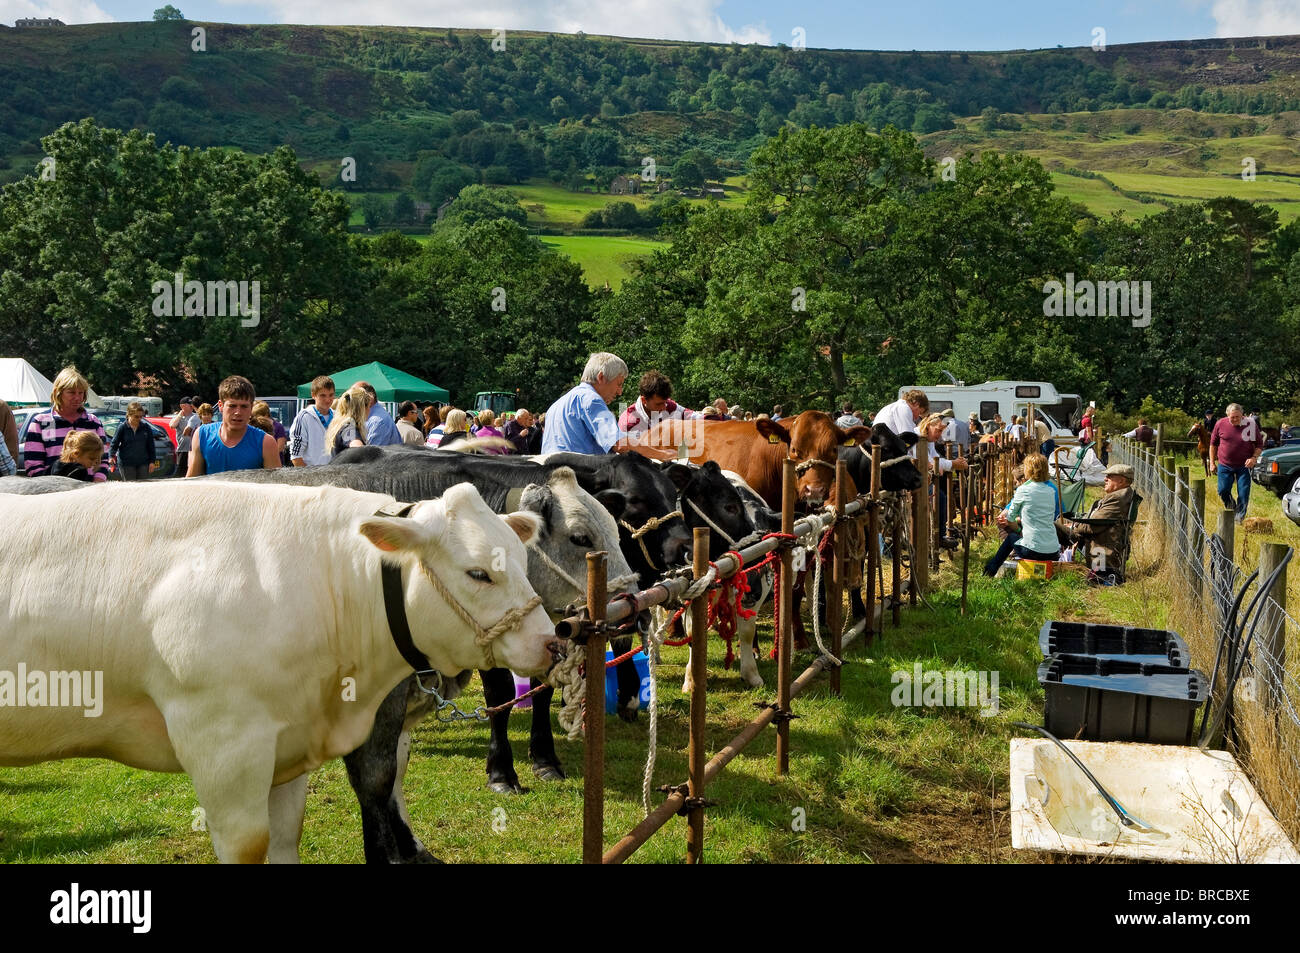 Vaches de bétail animaux de ferme en compétition dans Rosedale Agricultural Show in Été North Yorkshire Angleterre Royaume-Uni GB Grande-Bretagne Banque D'Images